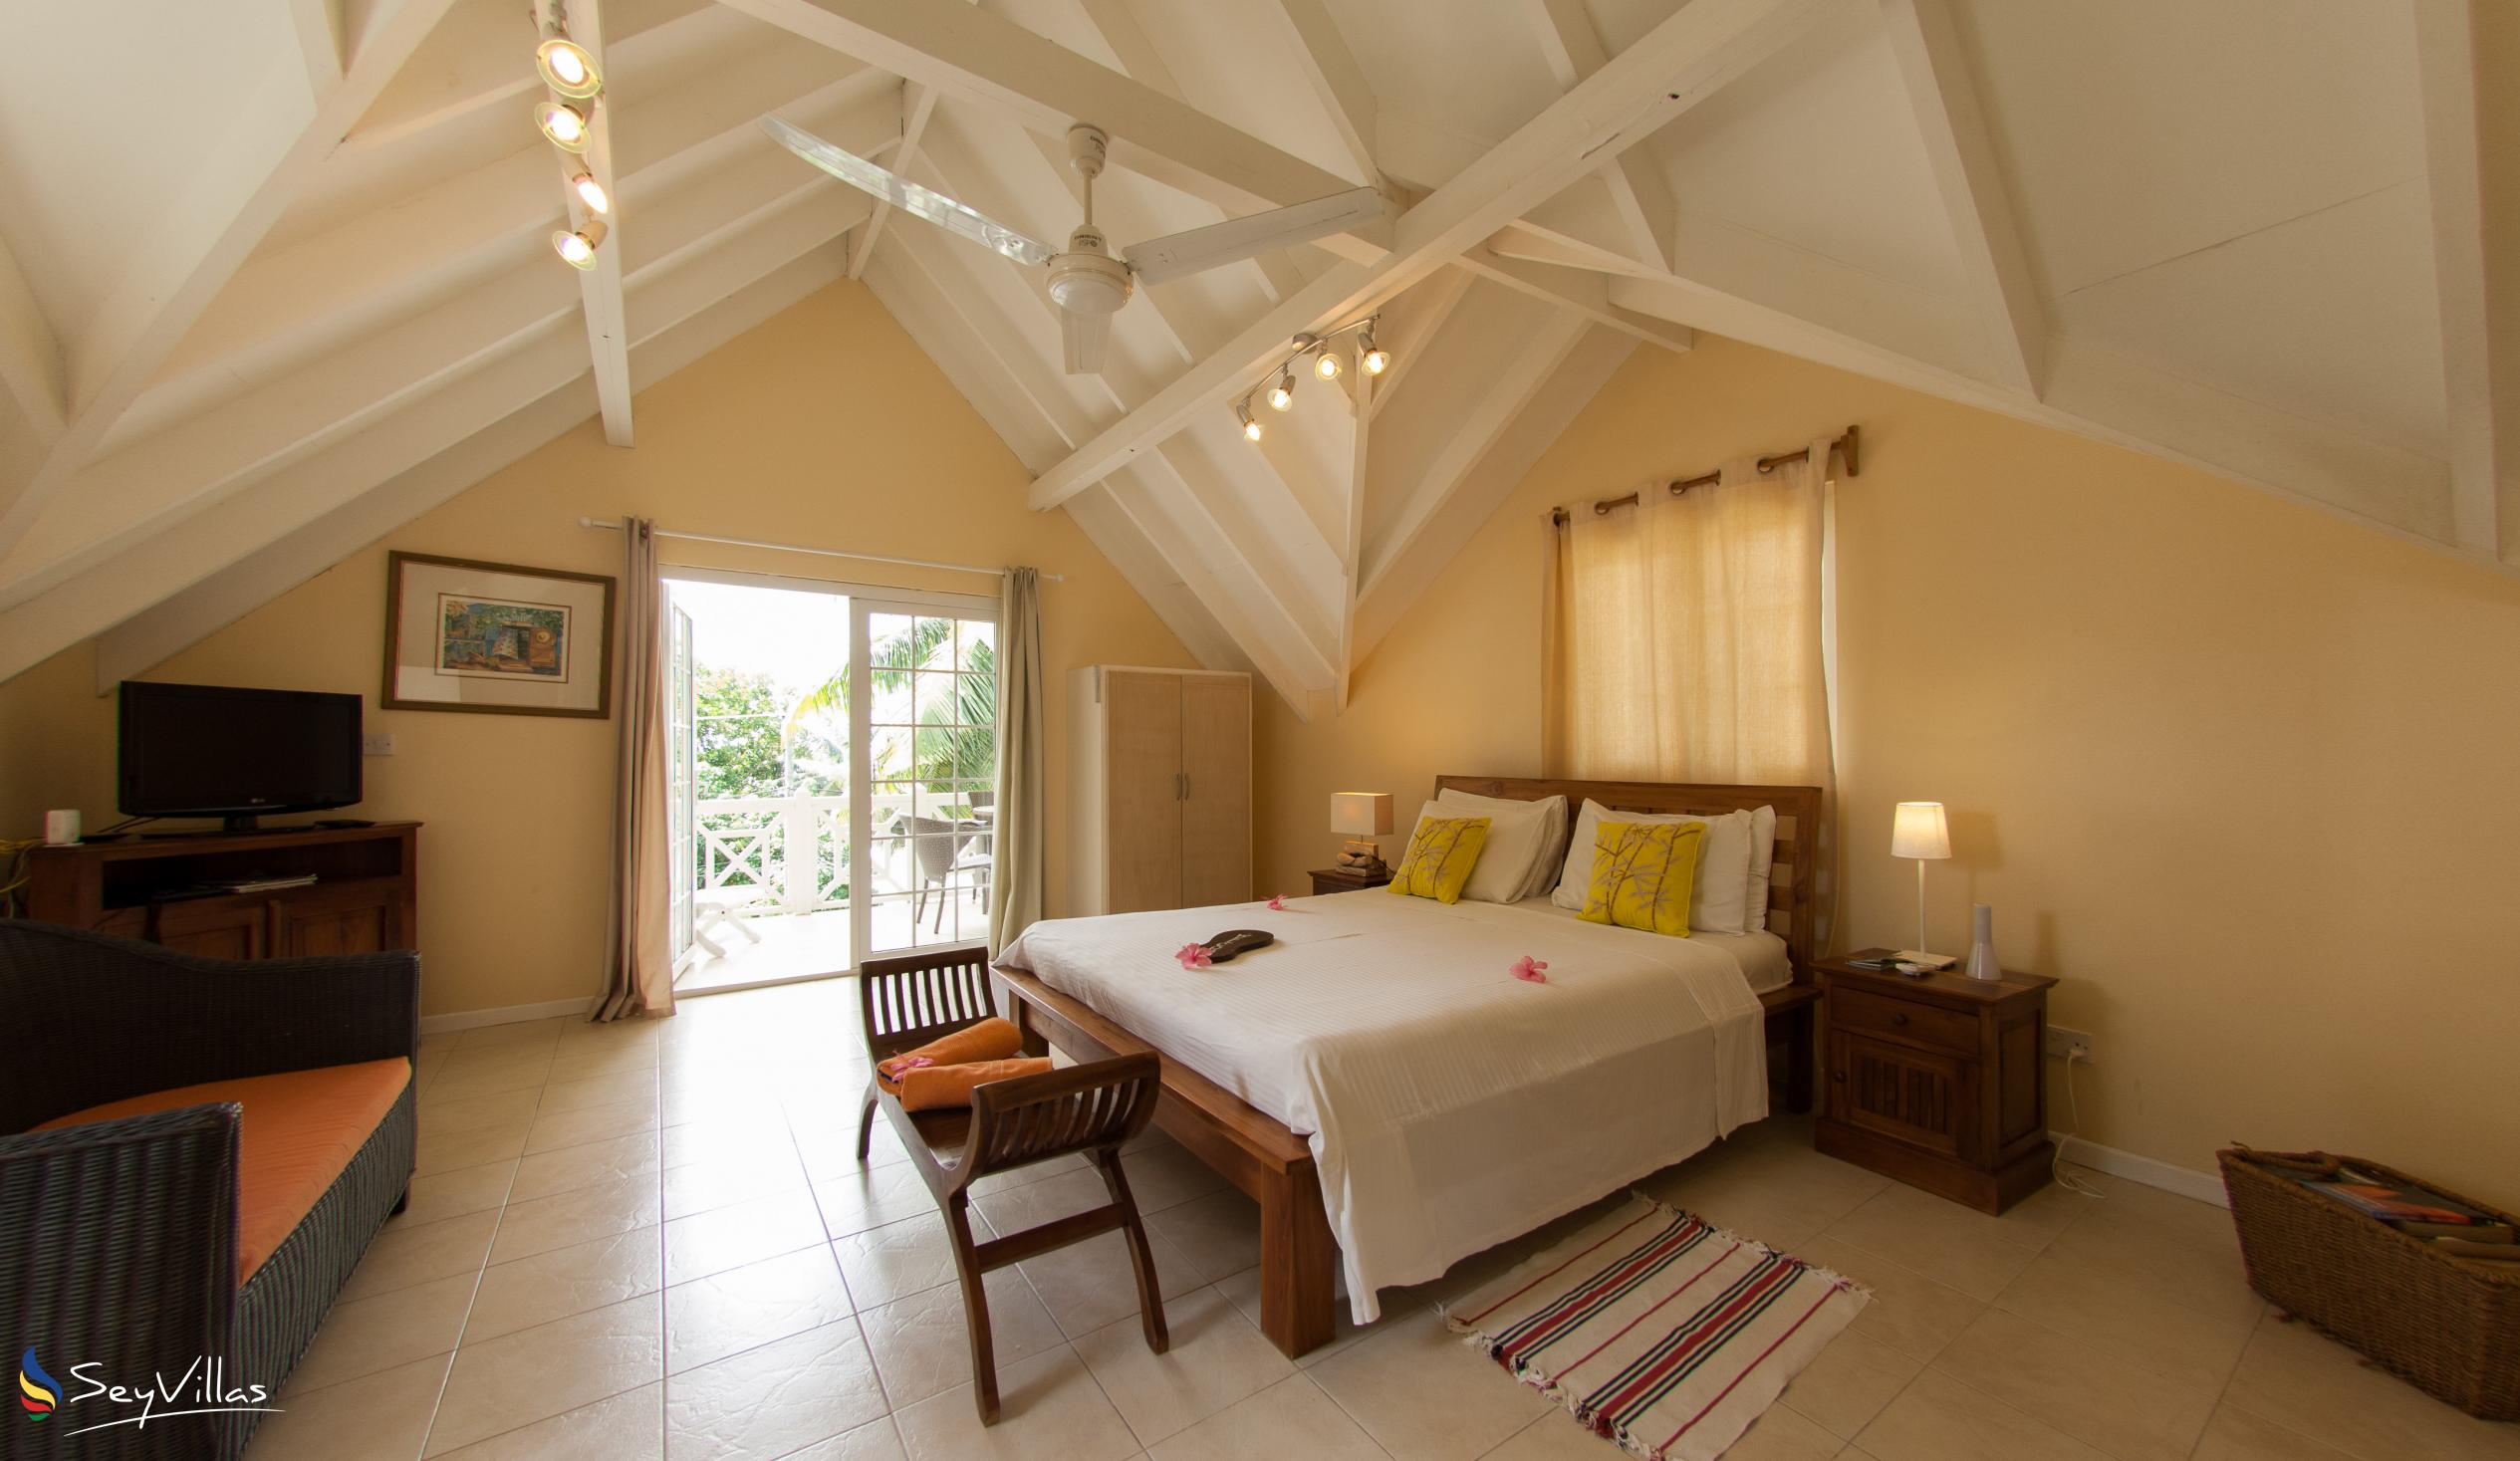 Photo 92: Le Domaine de Bacova - 2-Bedroom Villa - Mahé (Seychelles)